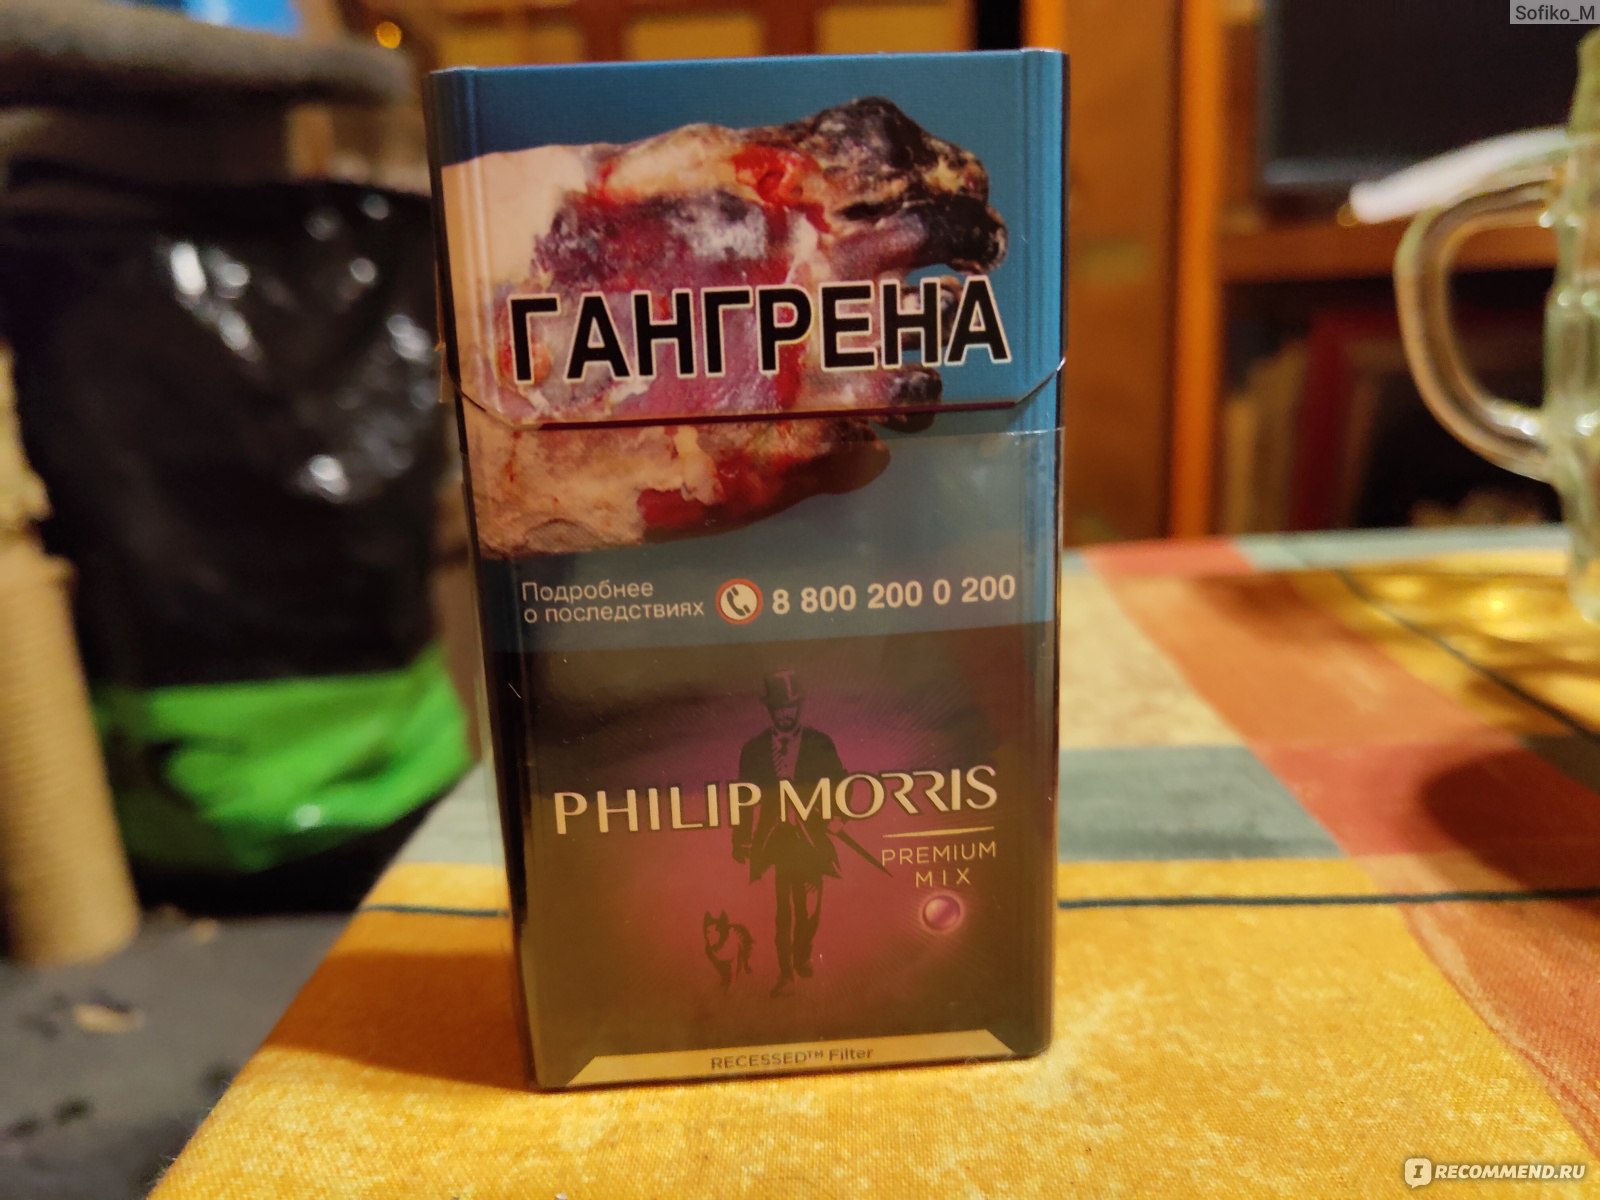 Сигареты филип моррис вкусы. Philip Morris Premium Mix. Сигареты Philp Morris com Prem ярк. Philip Morris сигареты с кнопкой Арбуз. Сигареты Philip Morris разные.